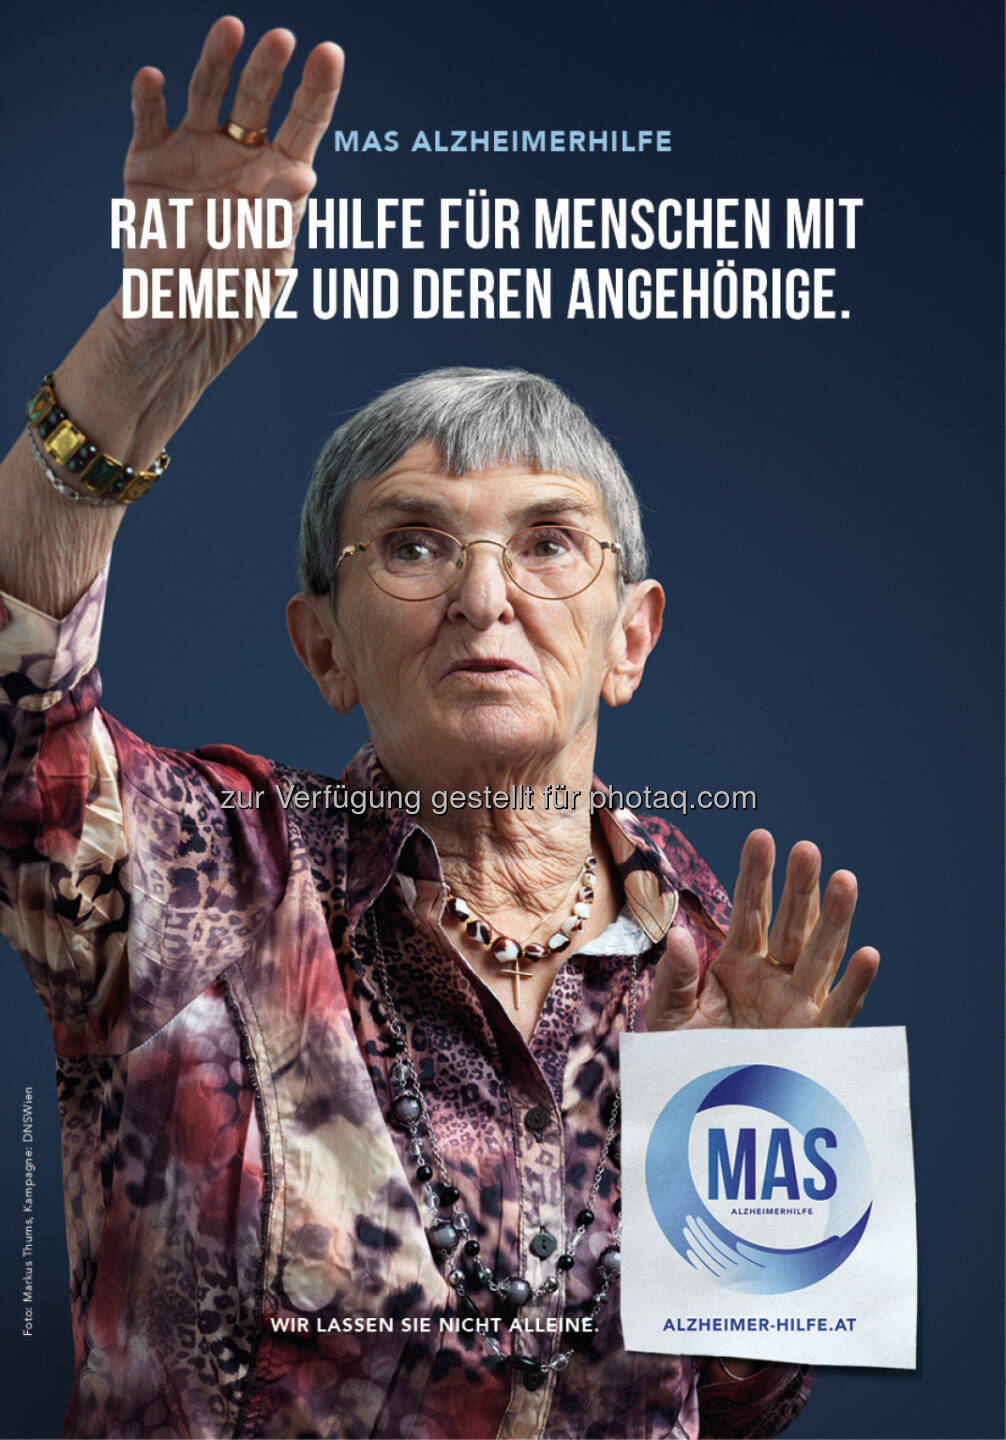 MAS Alzheimerhilfe: Broschüre: Rat und Hilfe für Menschen mit Demenz und deren Angehörige
(C) MAS Alzheimerhilfe 
